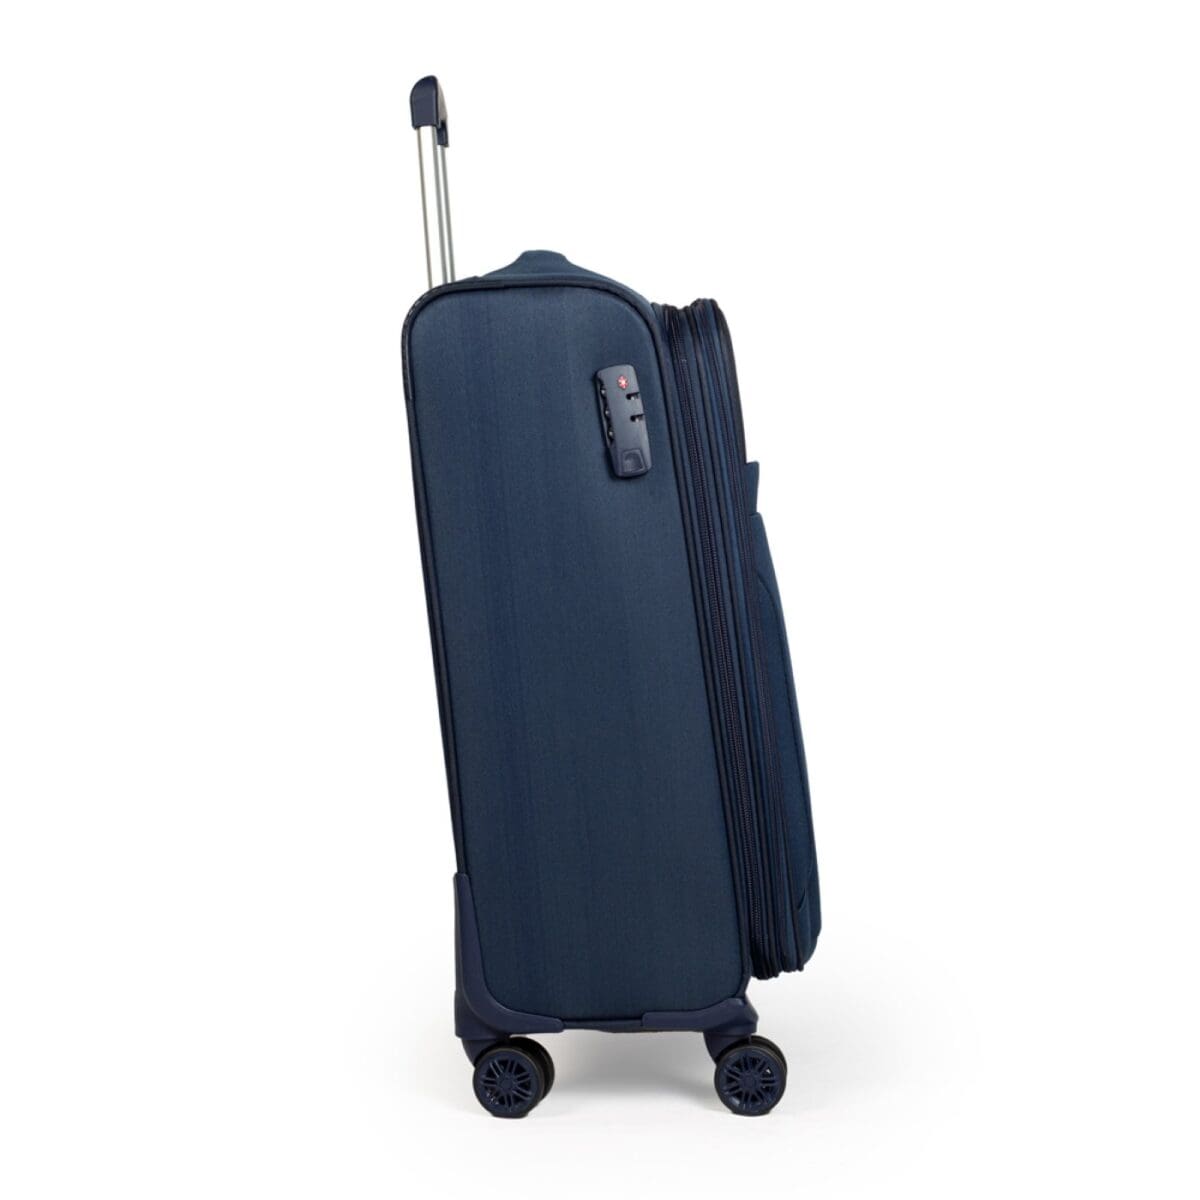 Δεξιά πλευρά βαλίτσας με κλειδαριά σε μαύρο μπλε